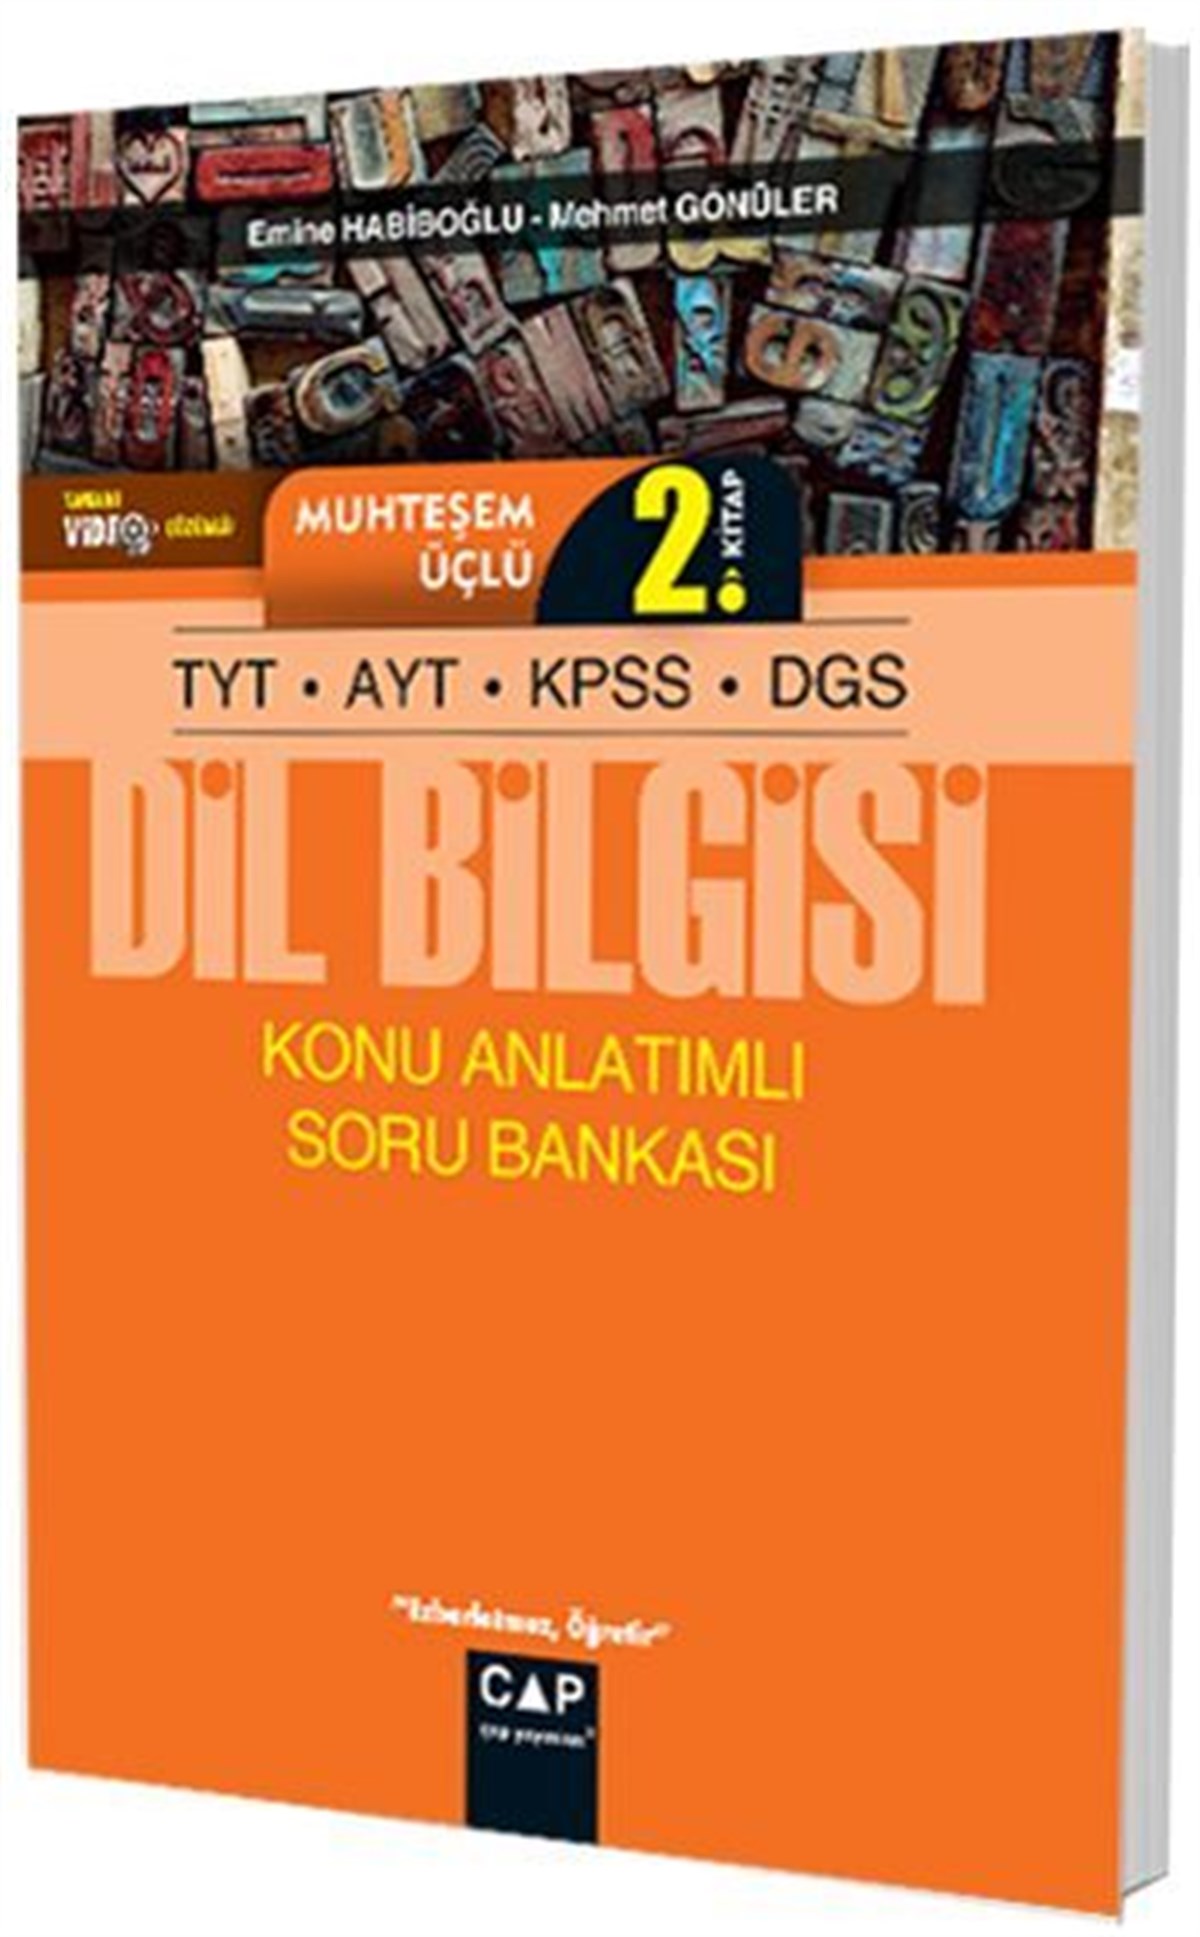 Çap Yayınları TYT AYT KPSS DGS Dil Bilgisi Muhteşem Üçlü 2. Kitap Konu  Anlatımlı Soru Bankası